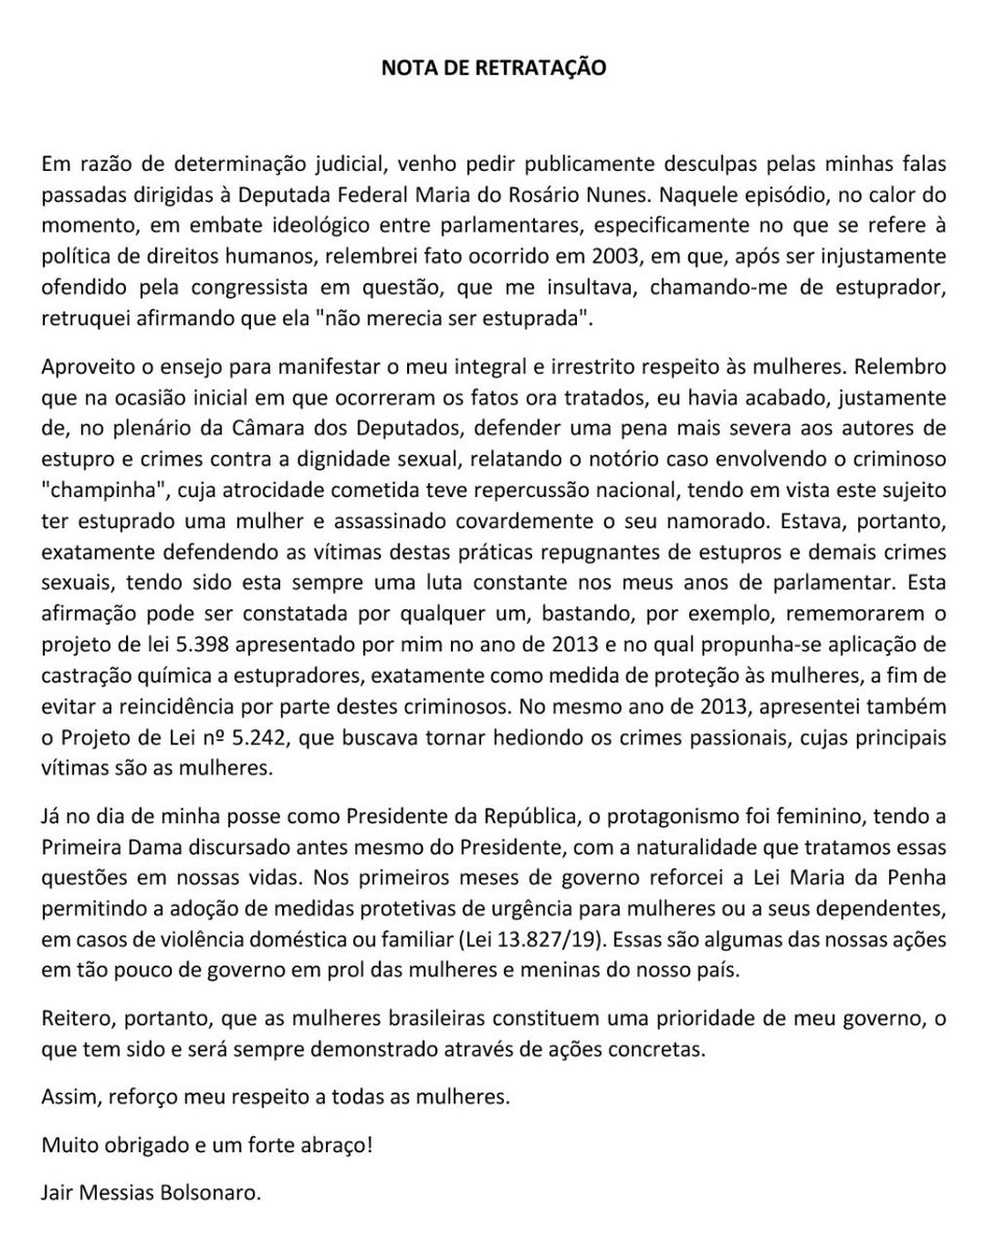 Ãntegra da nota de retrataÃ§Ã£o publicada por Bolsonaro em redes sociais â Foto: ReproduÃ§Ã£o